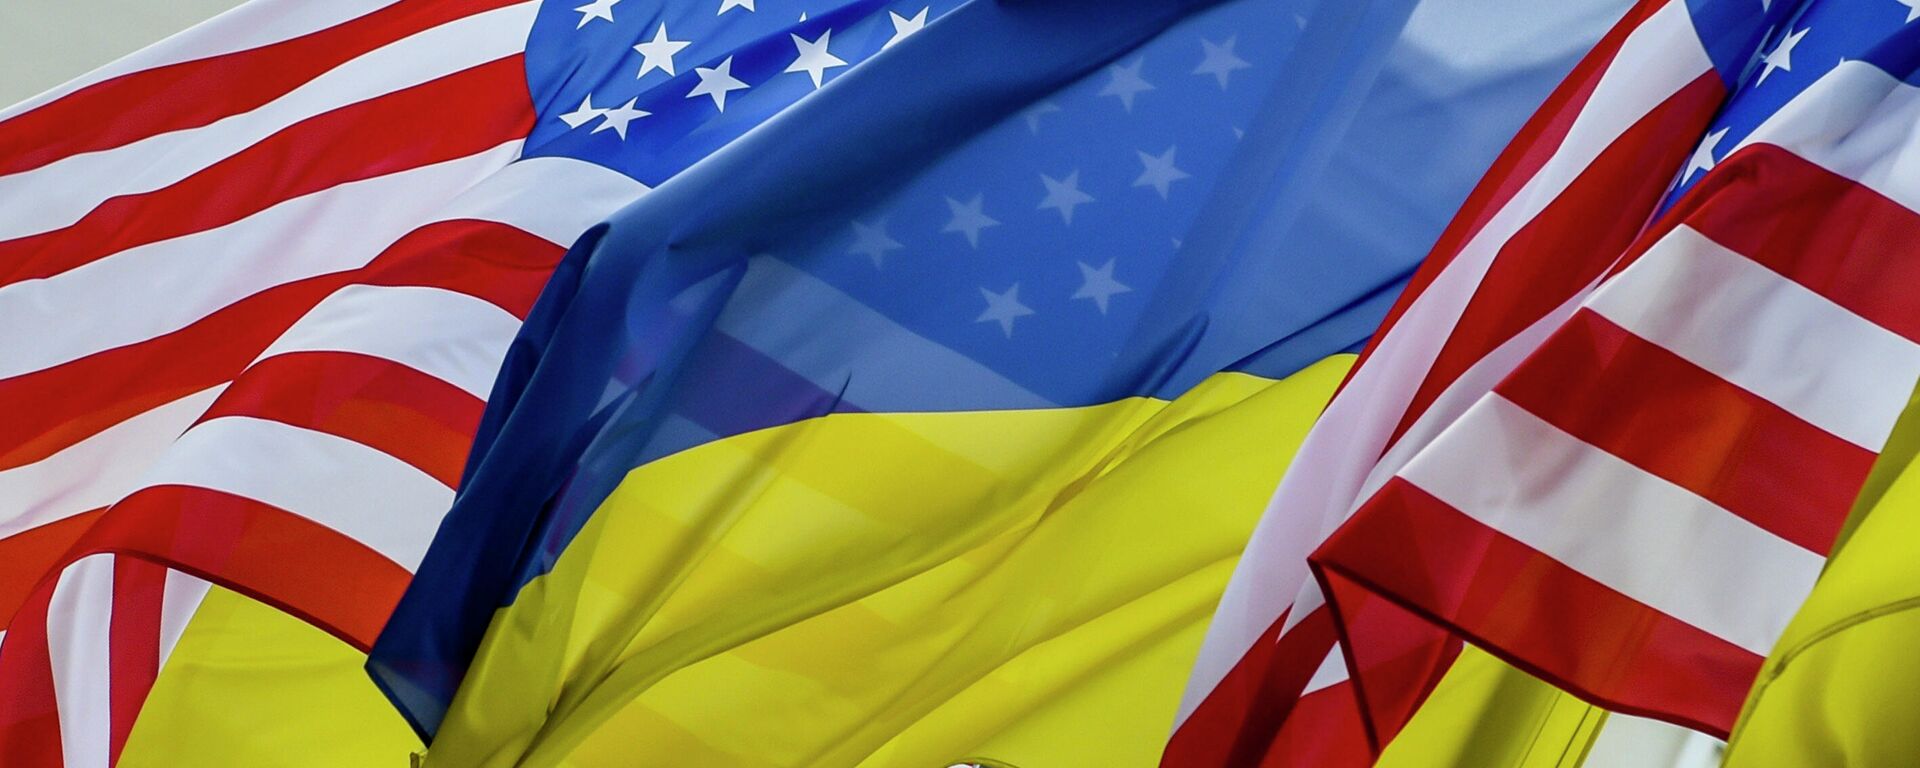 Ukrainos ir JAV vėliavos - Sputnik Lietuva, 1920, 12.01.2022